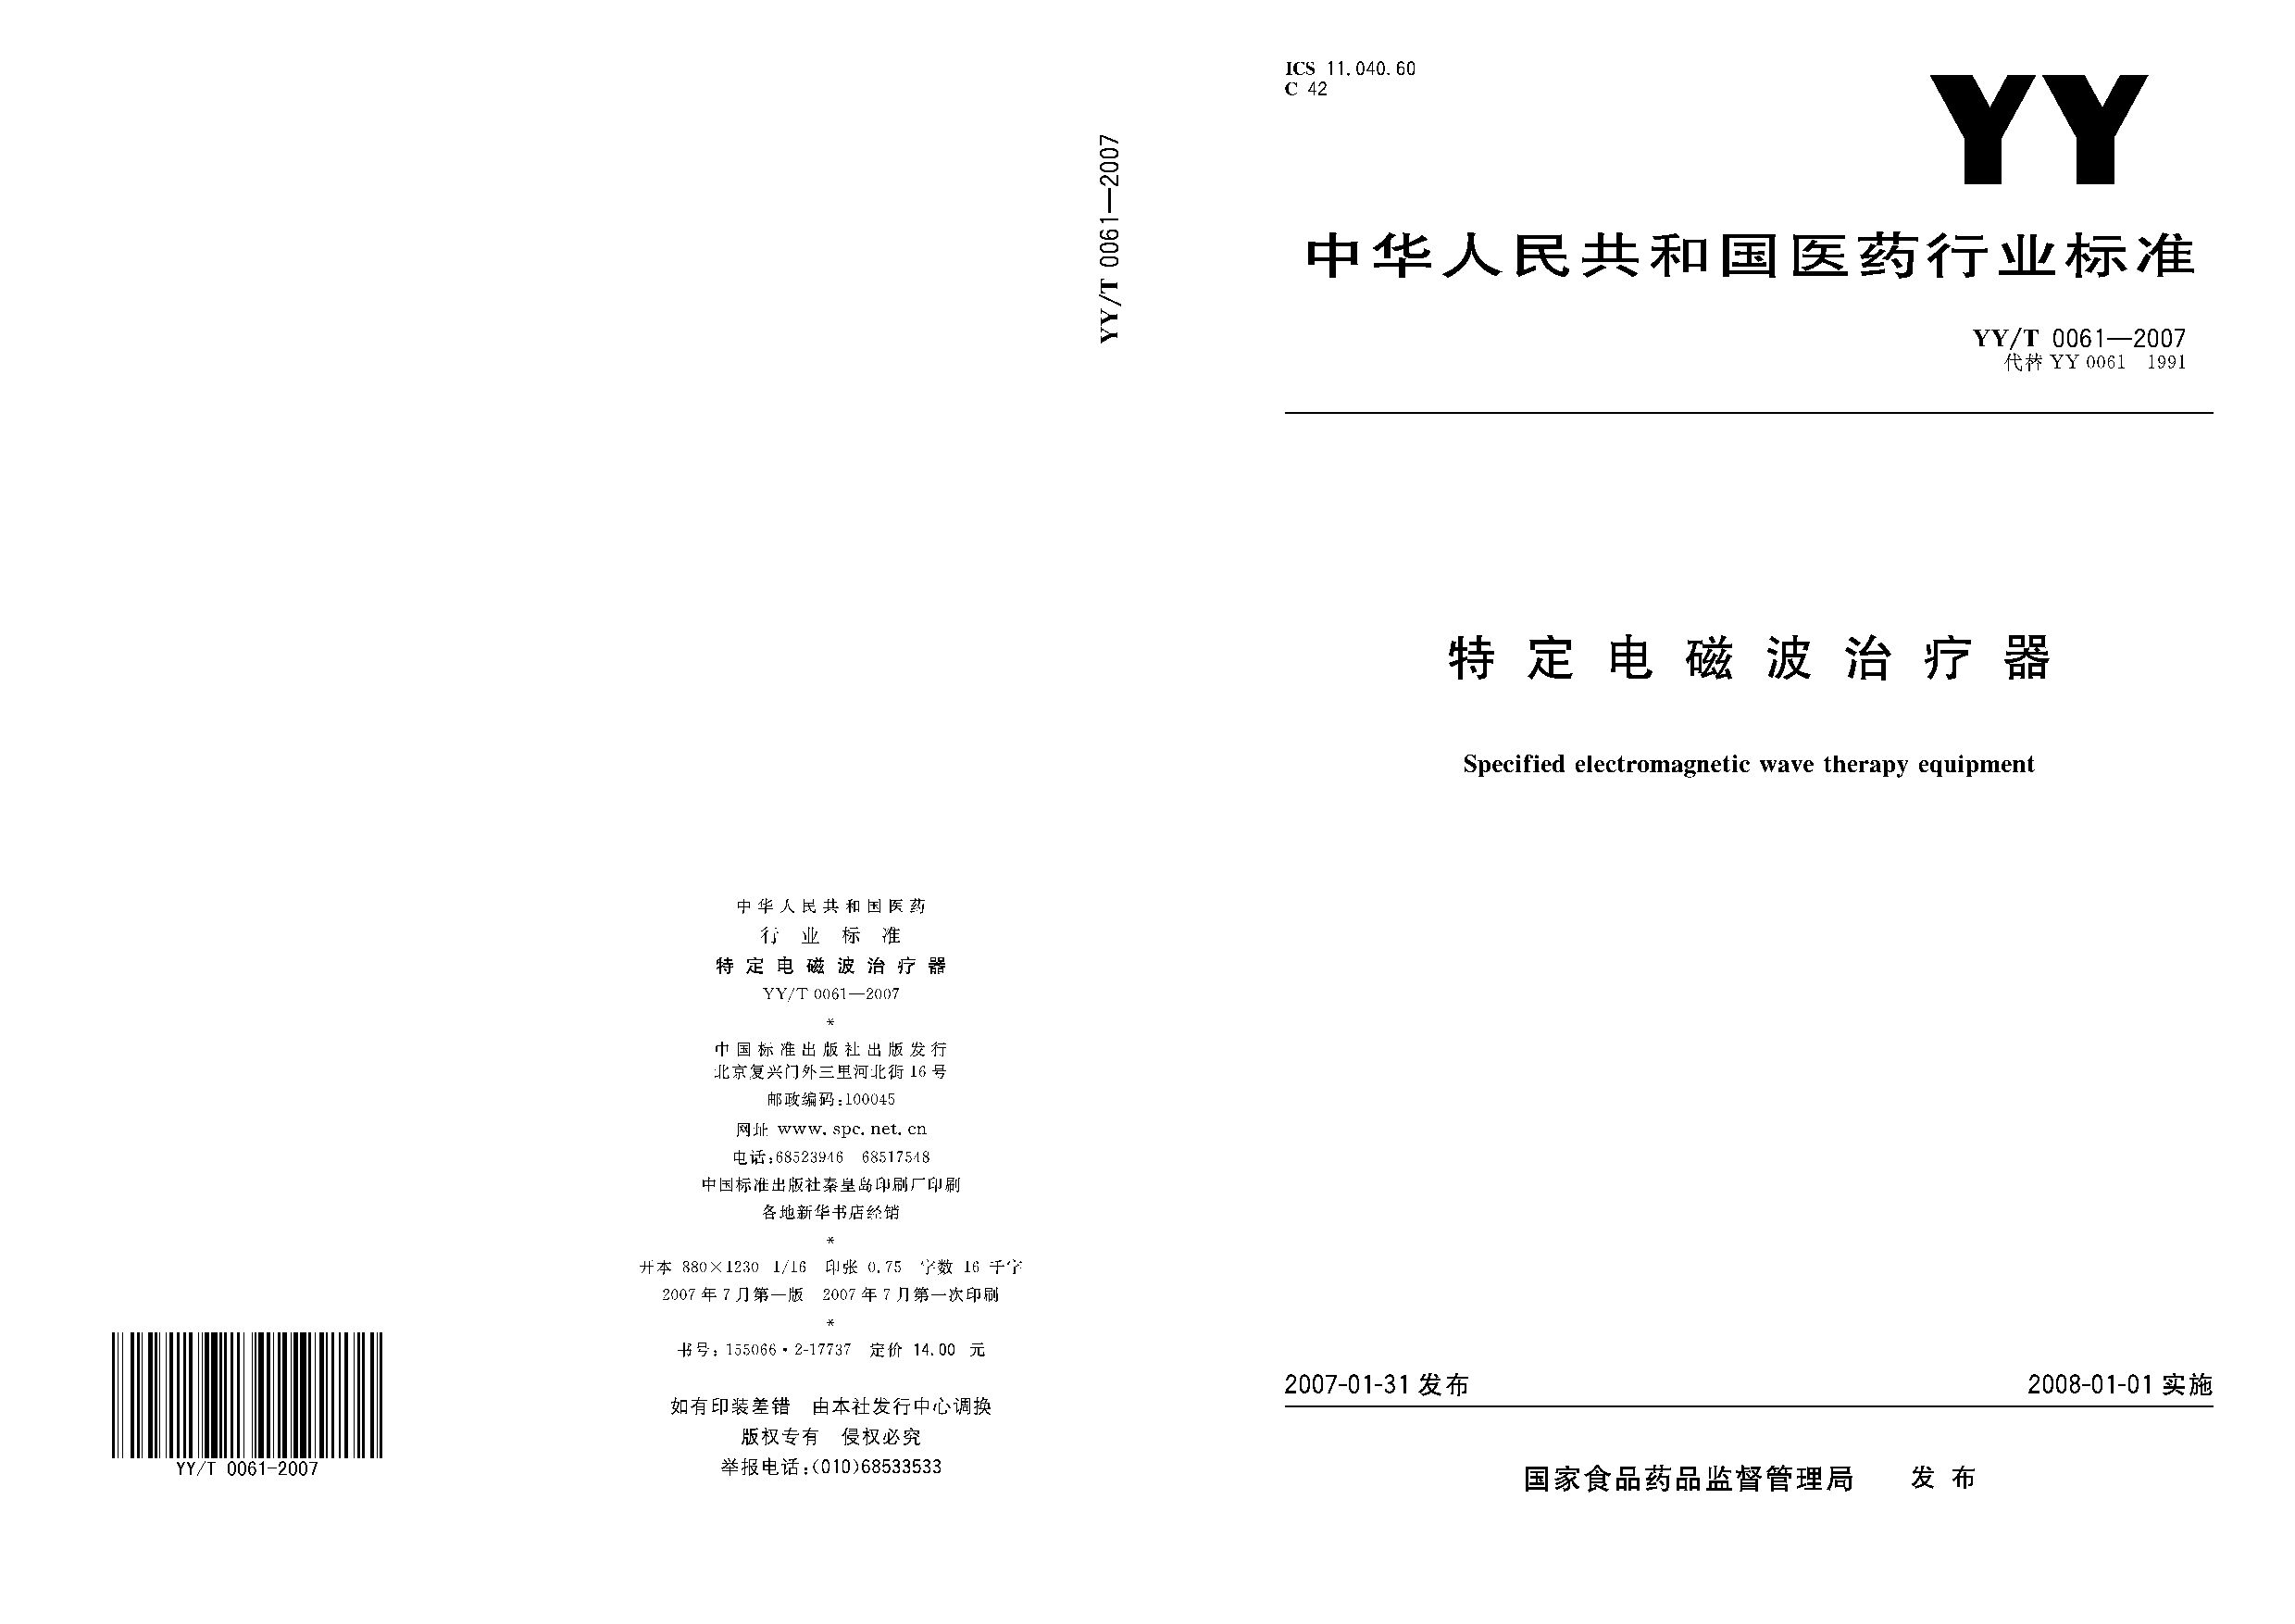 YY/T 0061-2007封面图